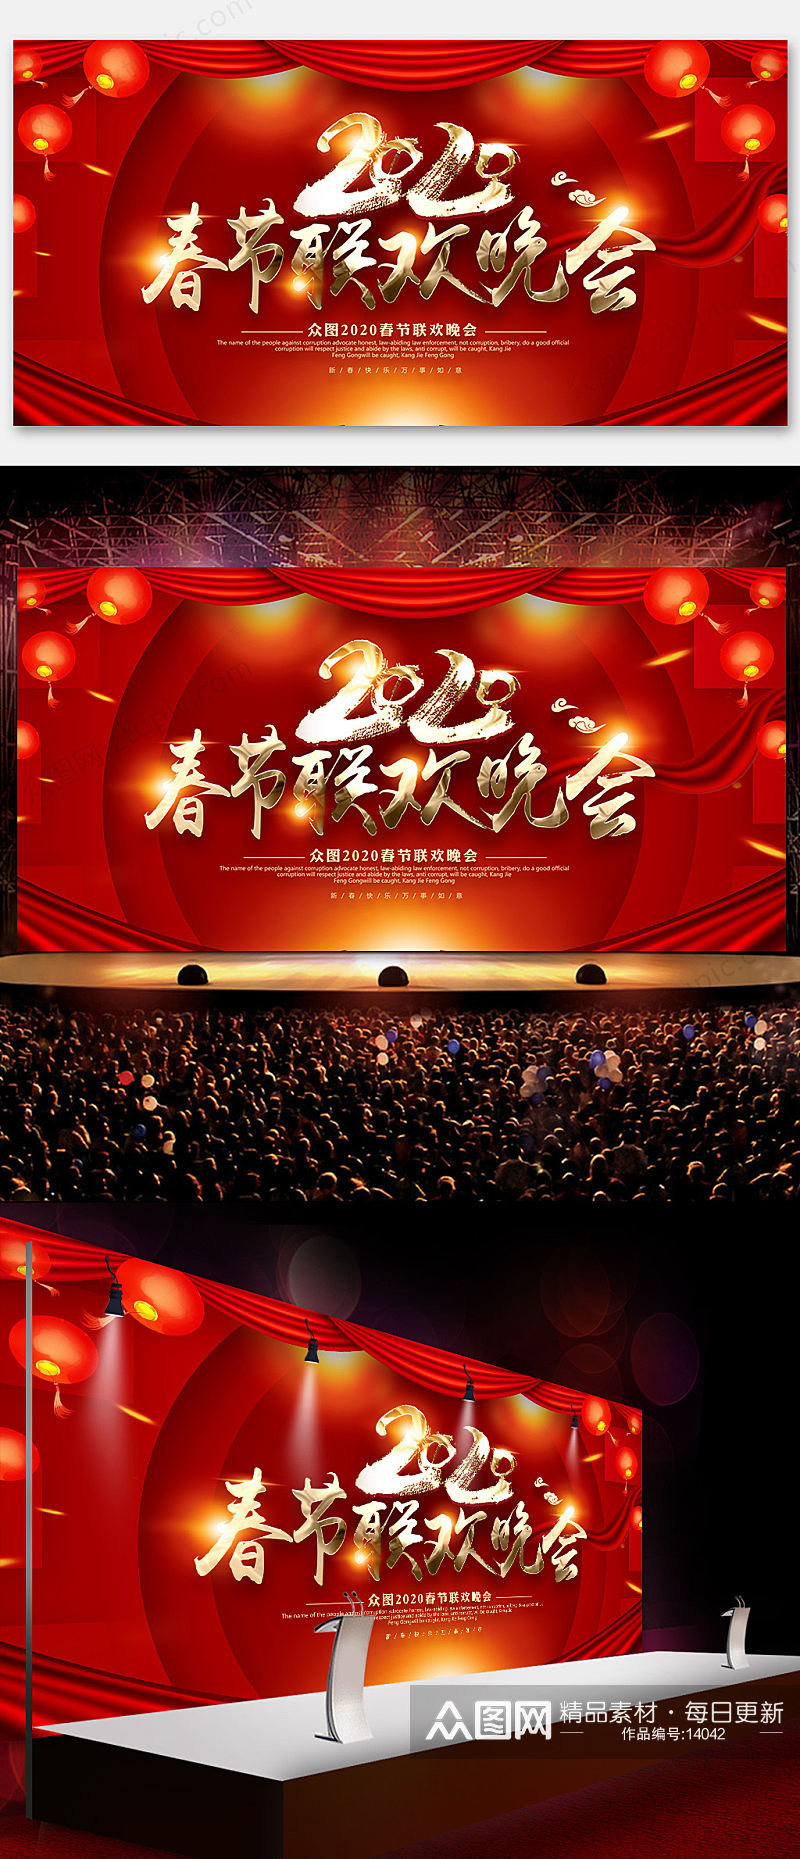 红色喜庆春节联欢晚会背景素材